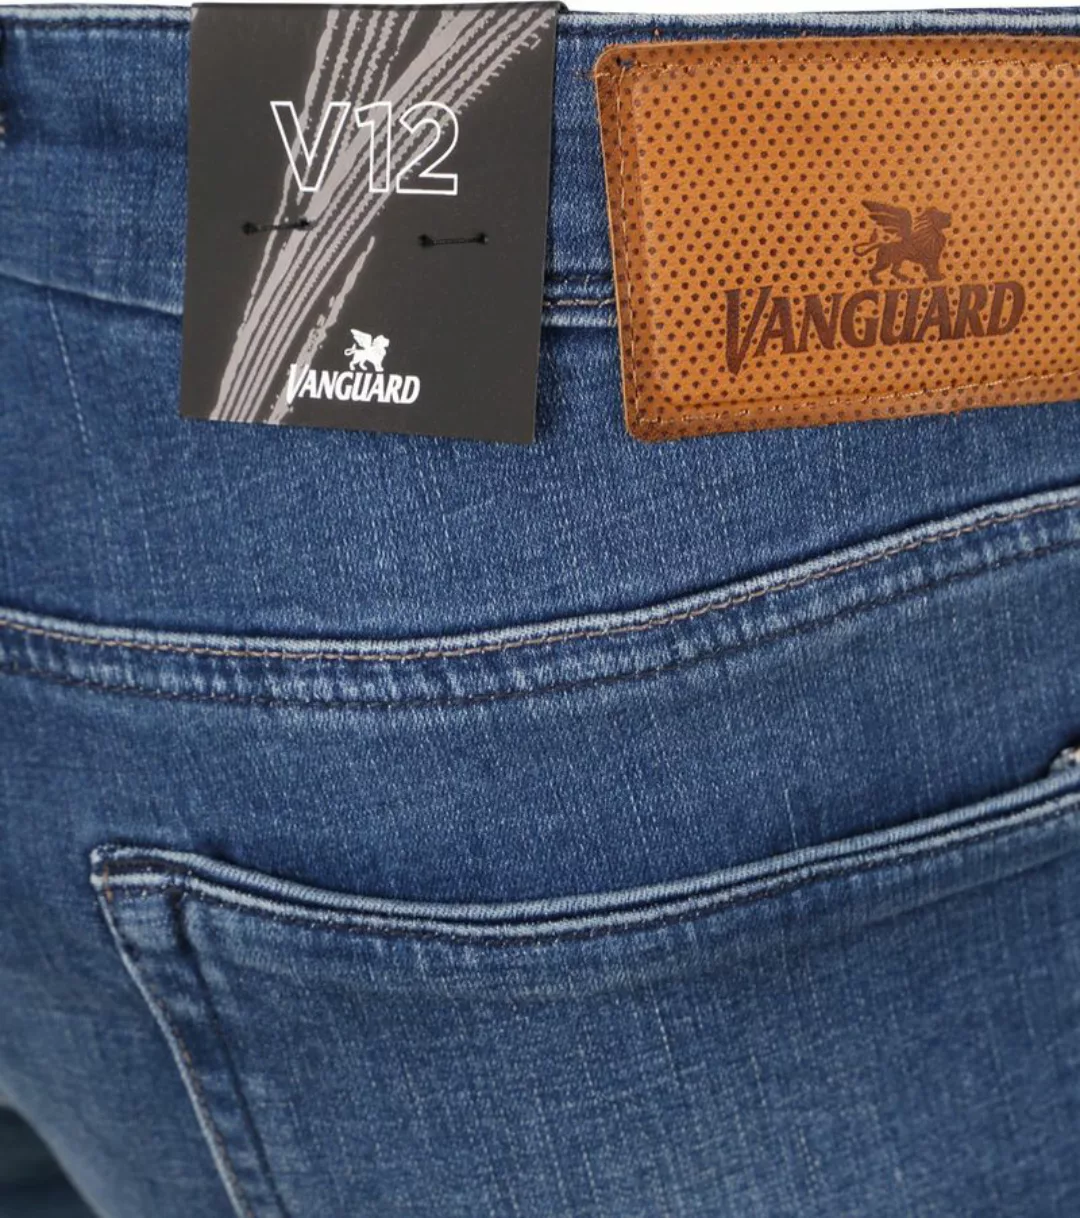 Vanguard Jeans V12 Rider Blau FIB - Größe W 38 - L 36 günstig online kaufen